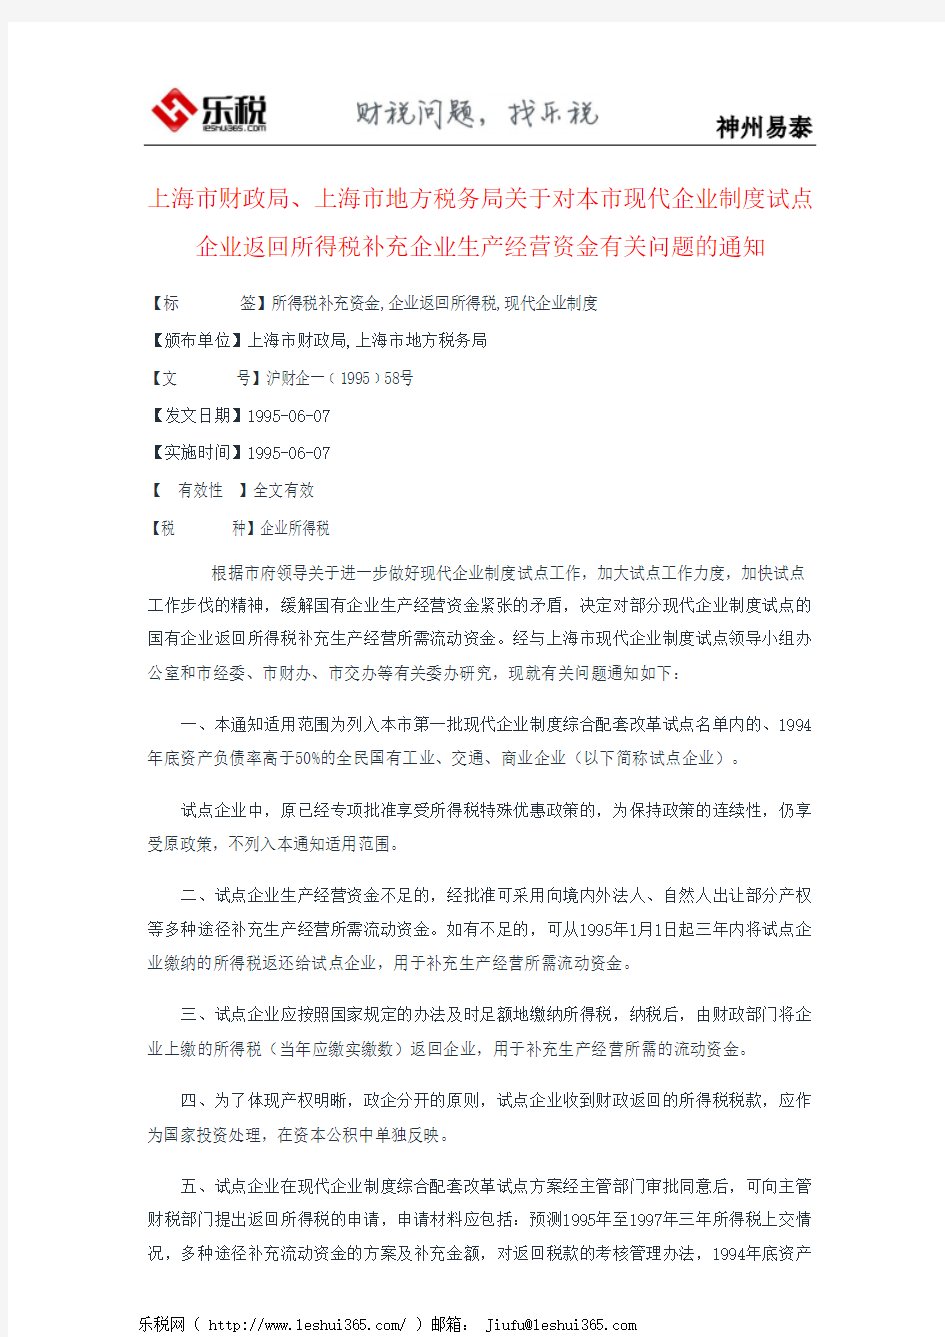 上海市财政局、上海市地方税务局关于对本市现代企业制度试点企业